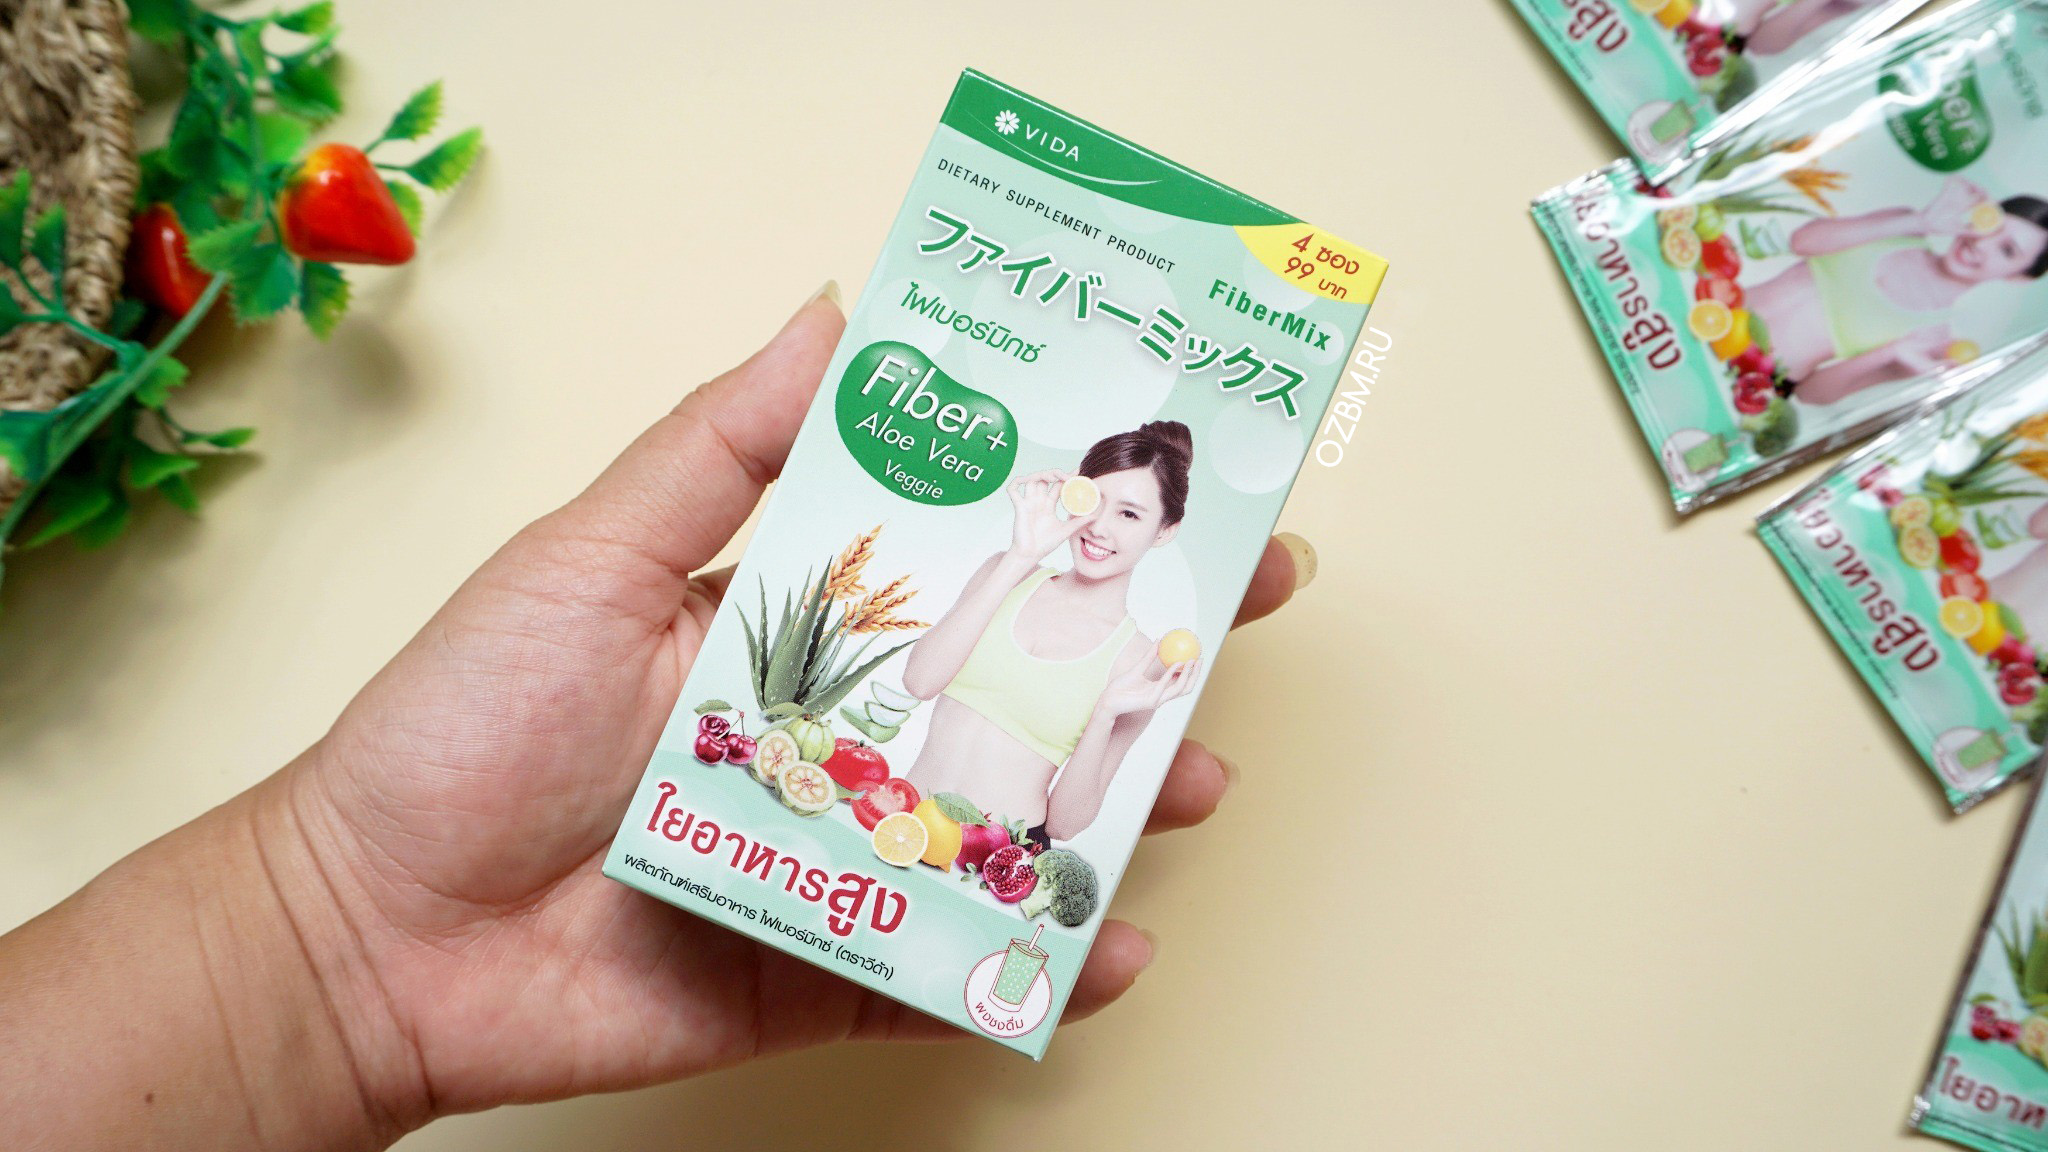 Тайская клетчатка из овощей и фруктов для снижения веса VIDA Fiber Mix + Aloe Vera Veggie 4 пакетика по 12гр. КЛЕТЧАТКА ИЗ ТАЙЛАНДА